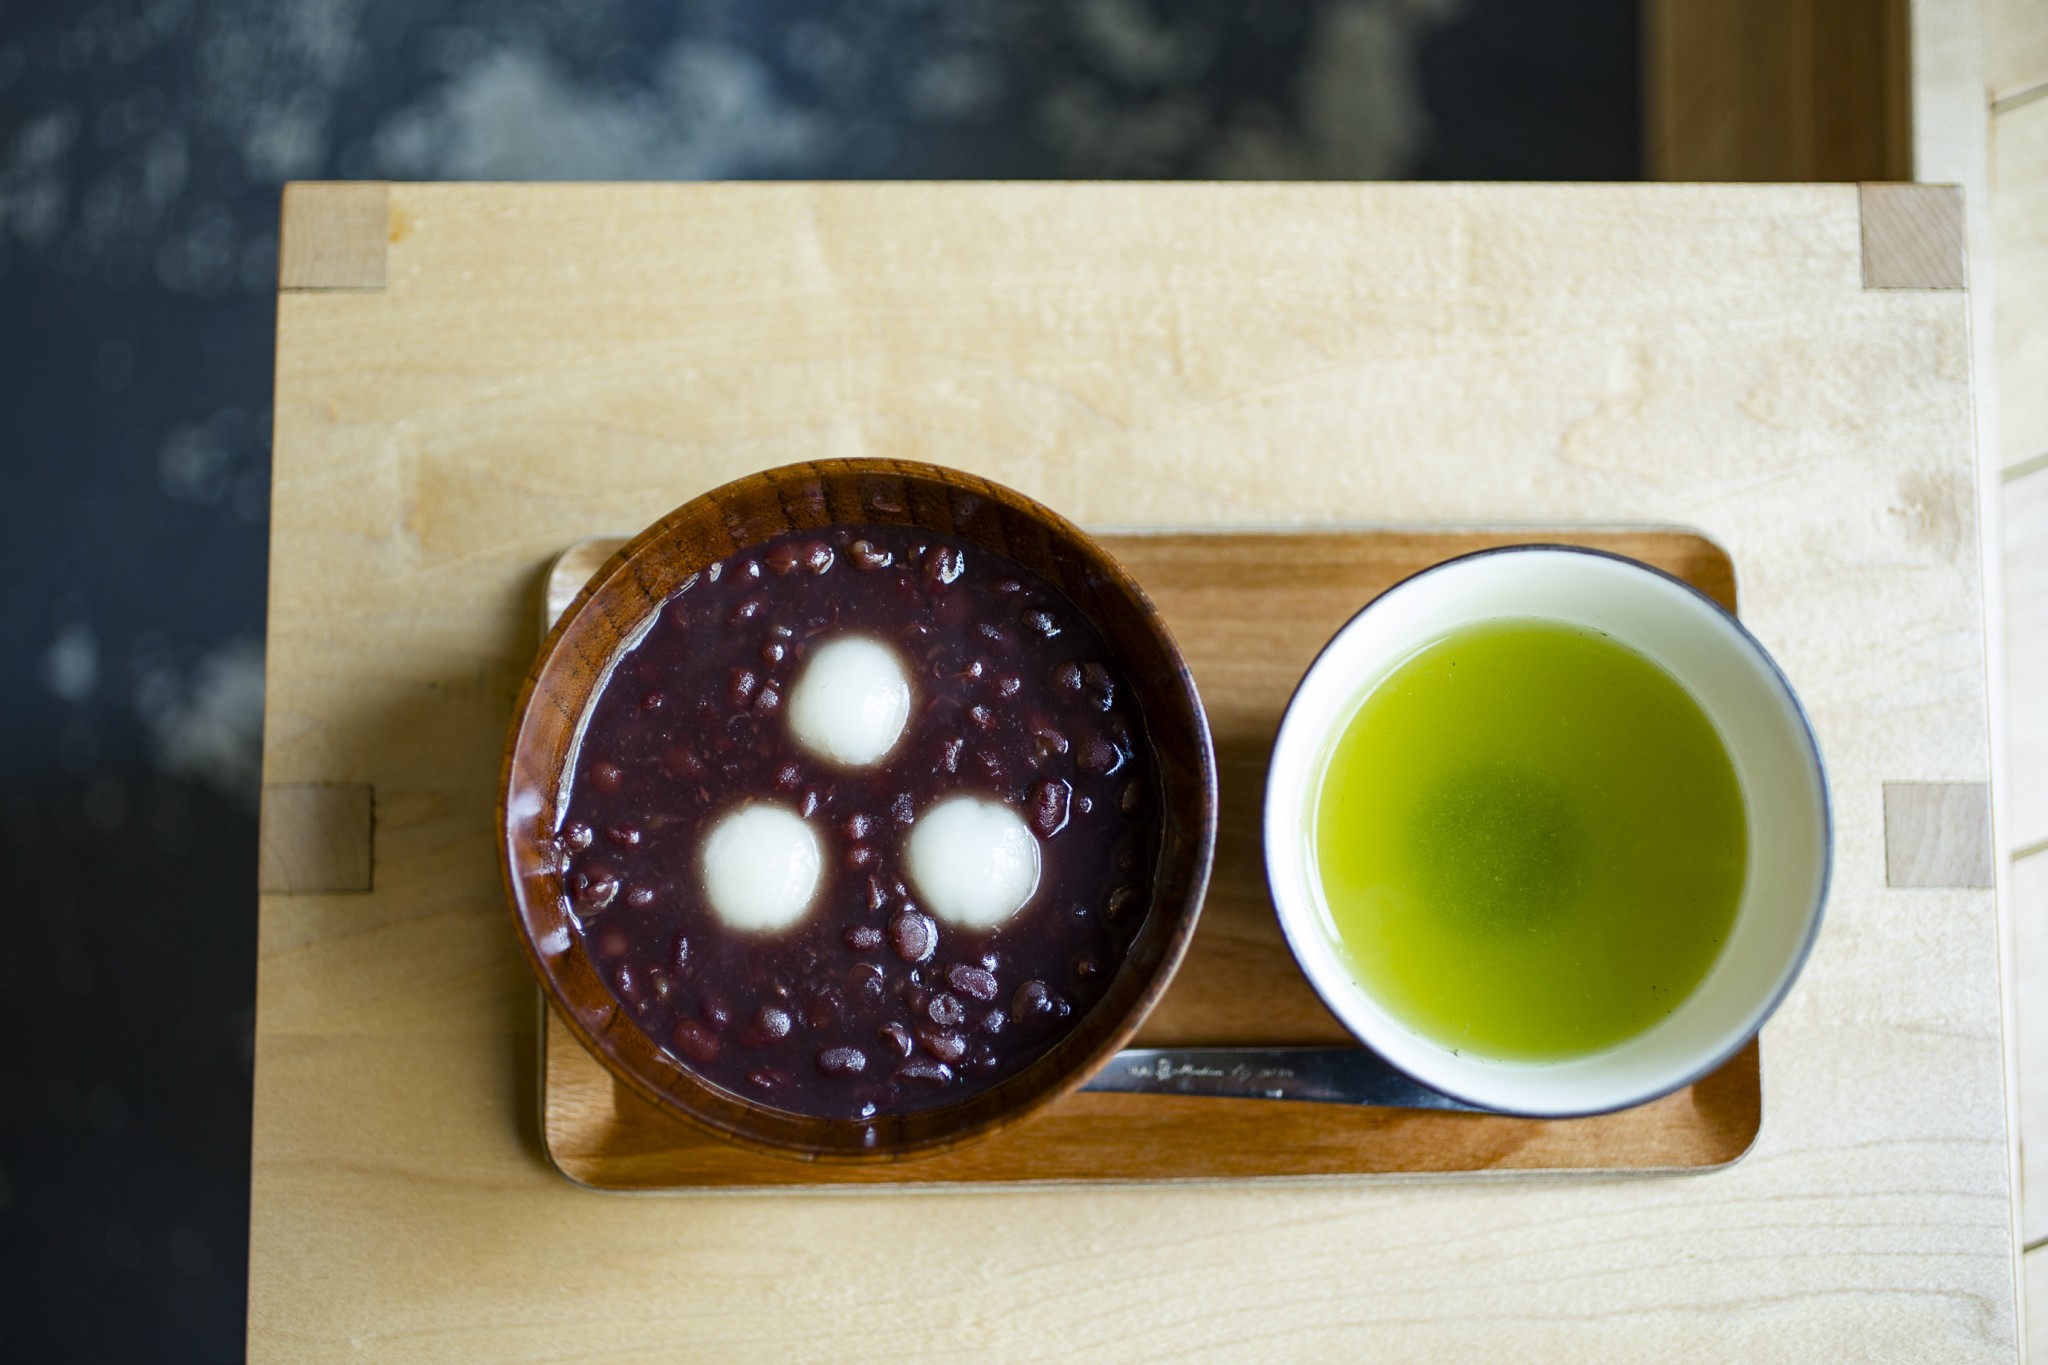 ぜんざいお茶付き750円。お茶は本日の煎茶、玄米茶、ほうじ茶から選べる。